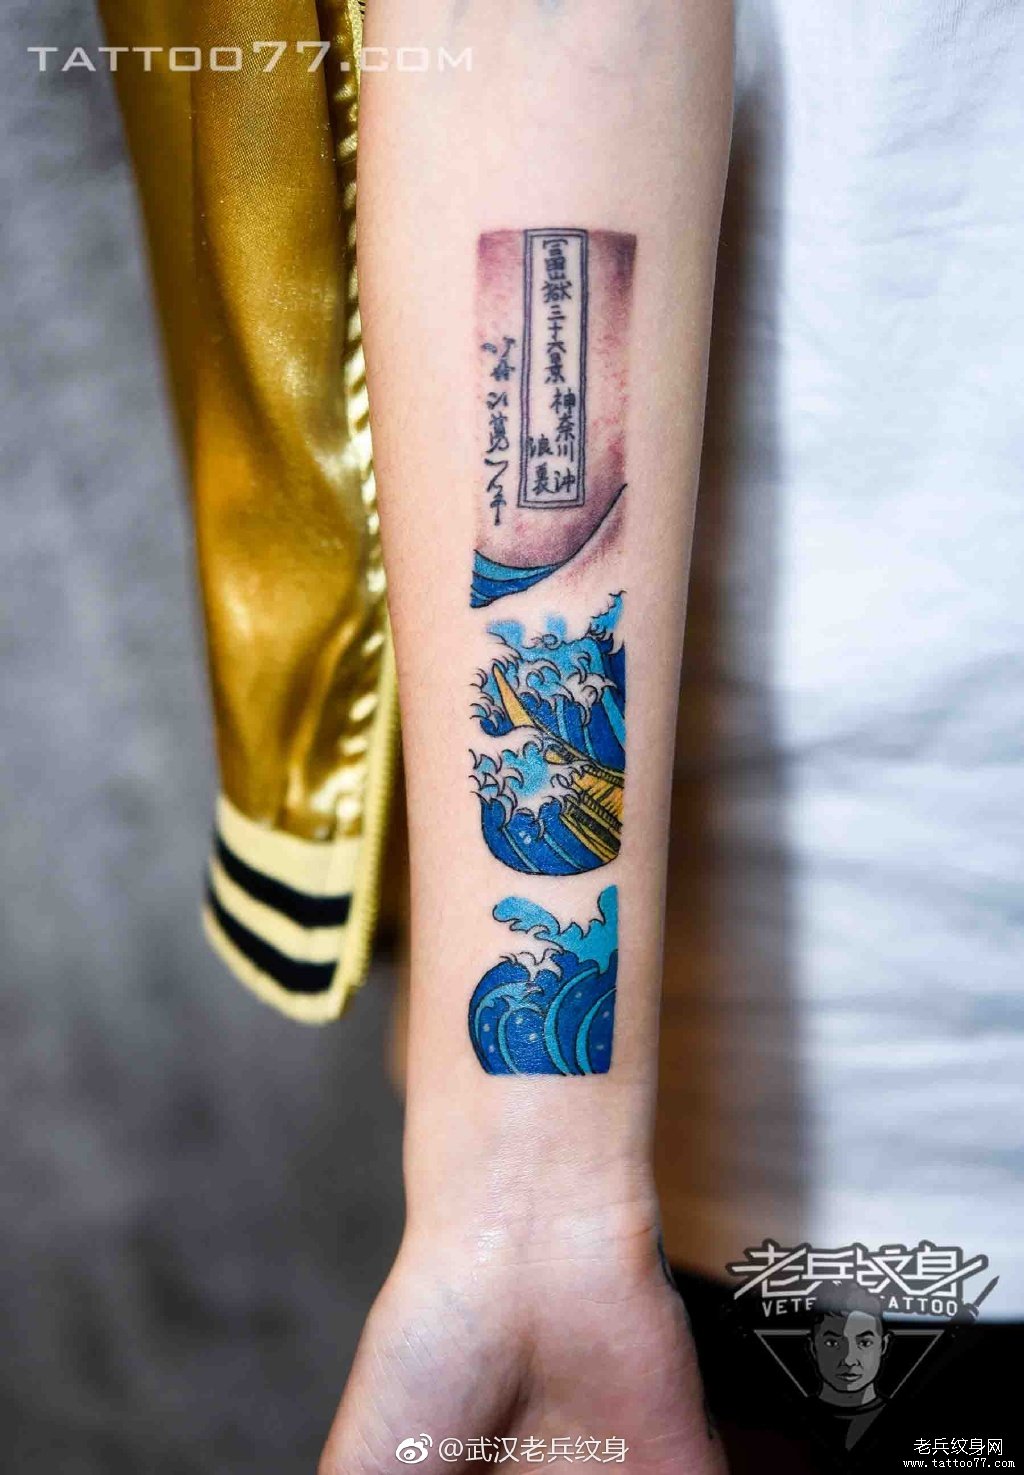 武汉纹身店打造的手部浪花纹身图案作品